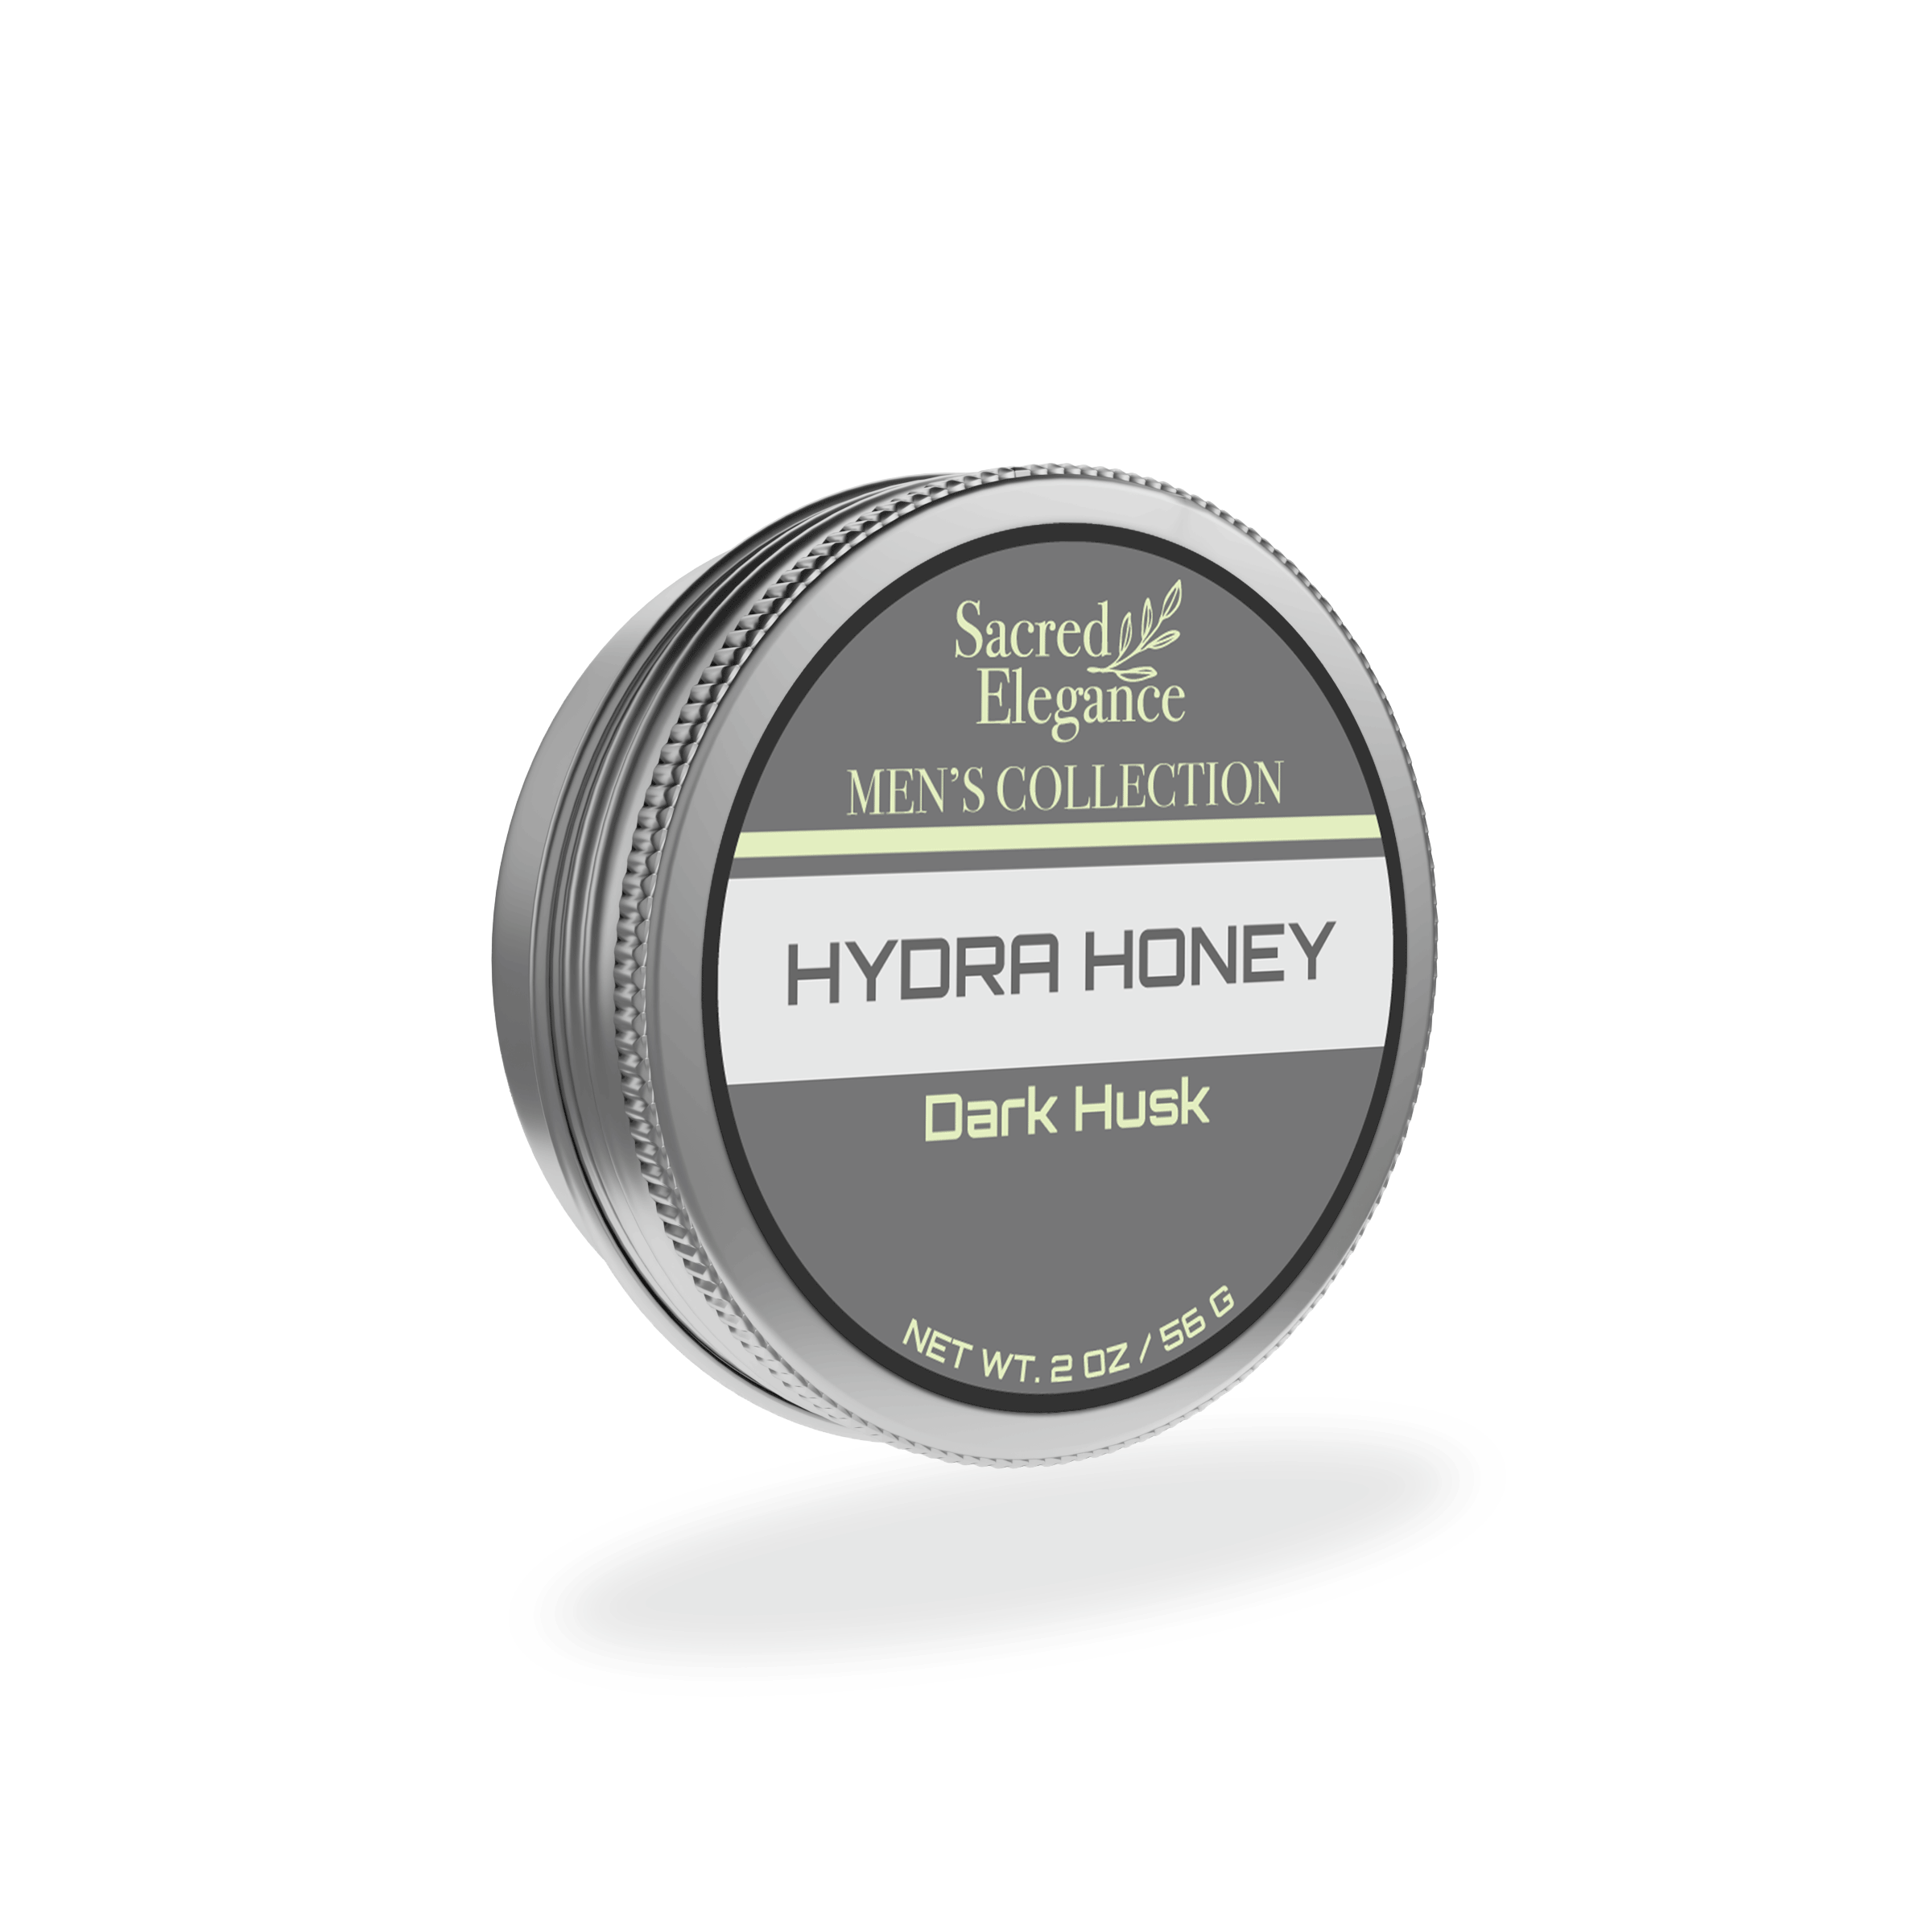 Dark Husk Hydra Honey "Wax"